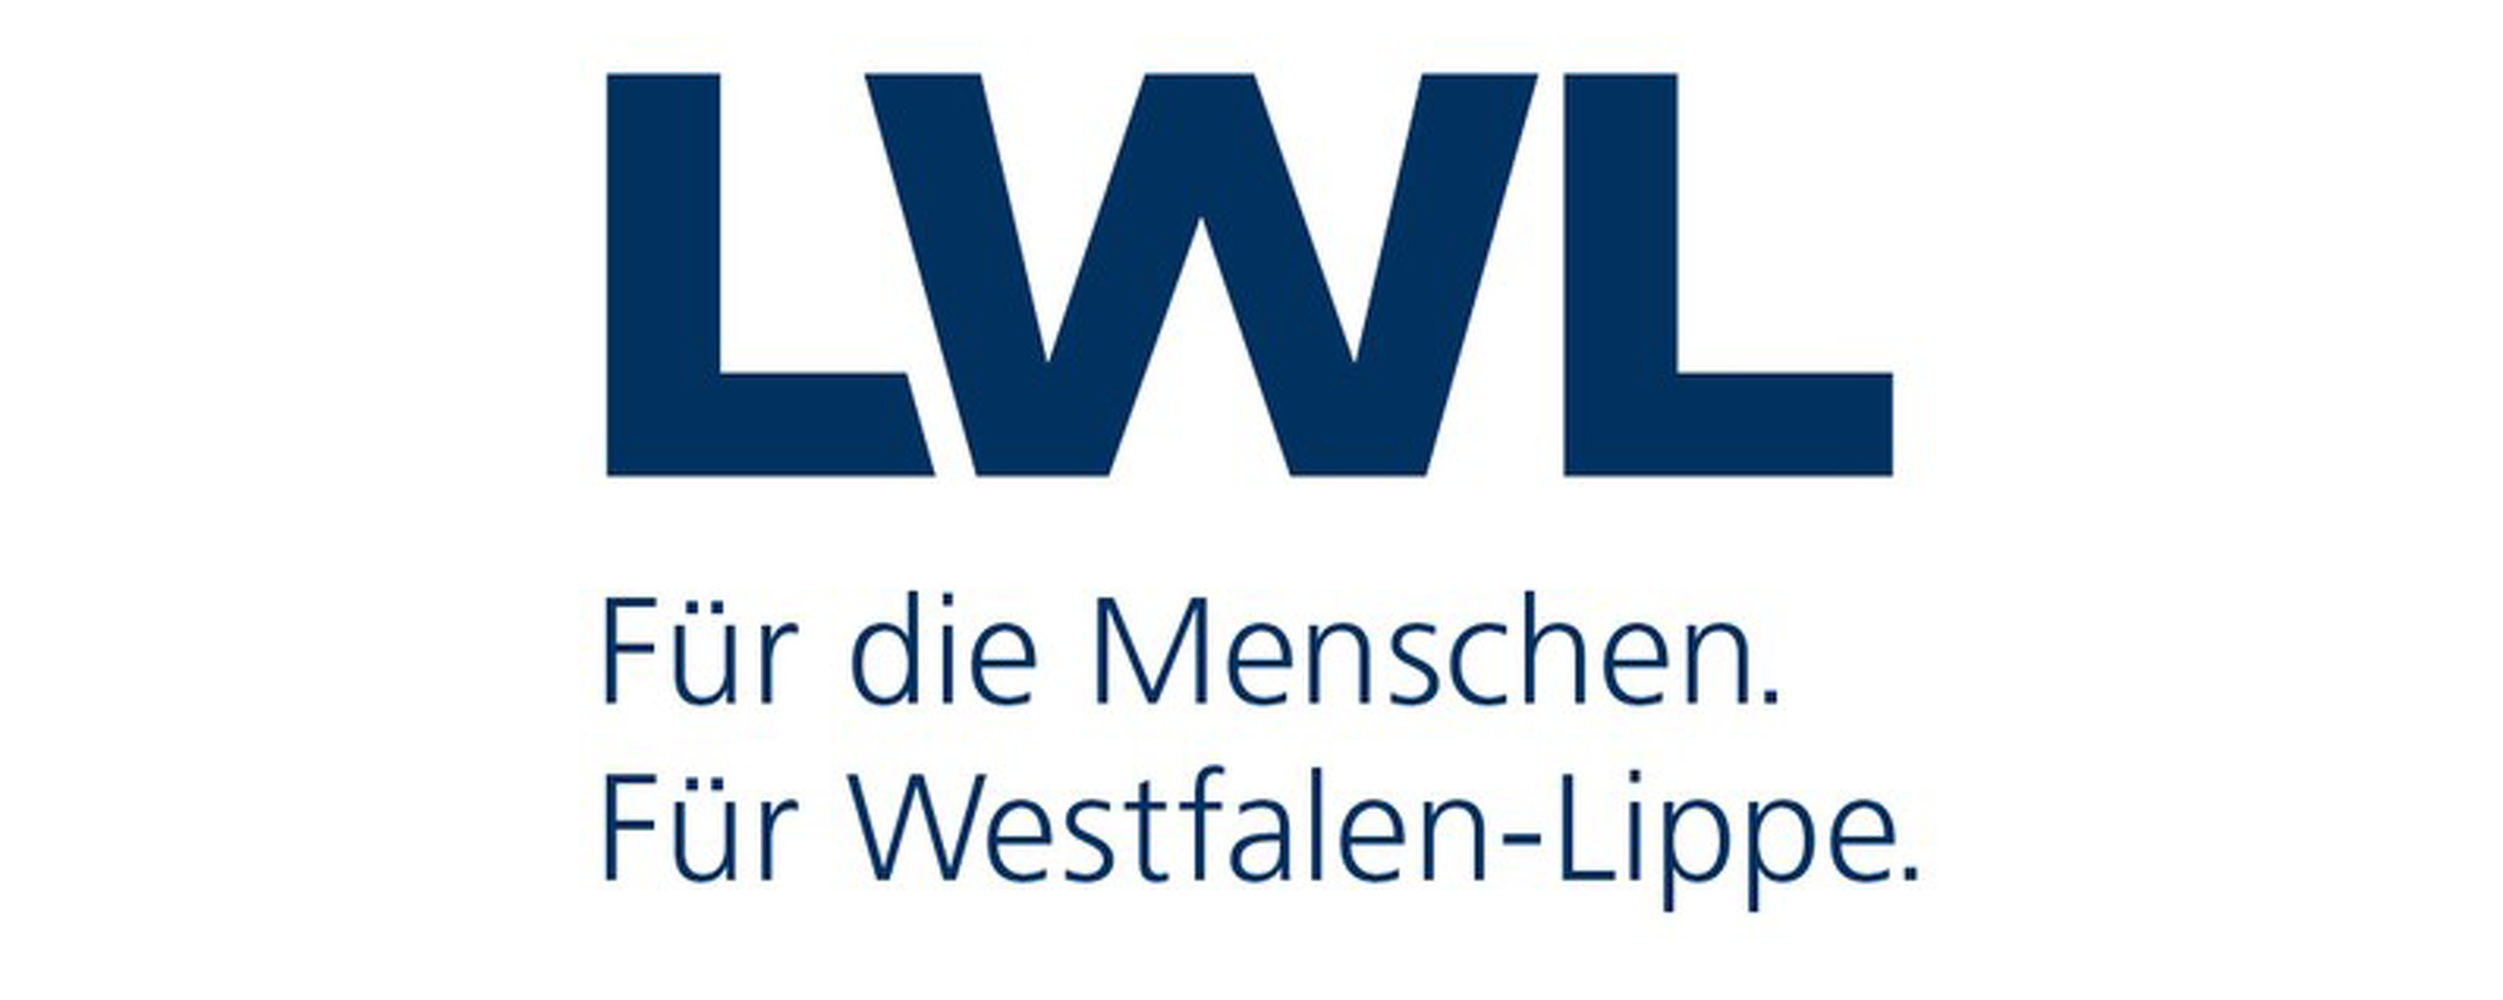 LWL